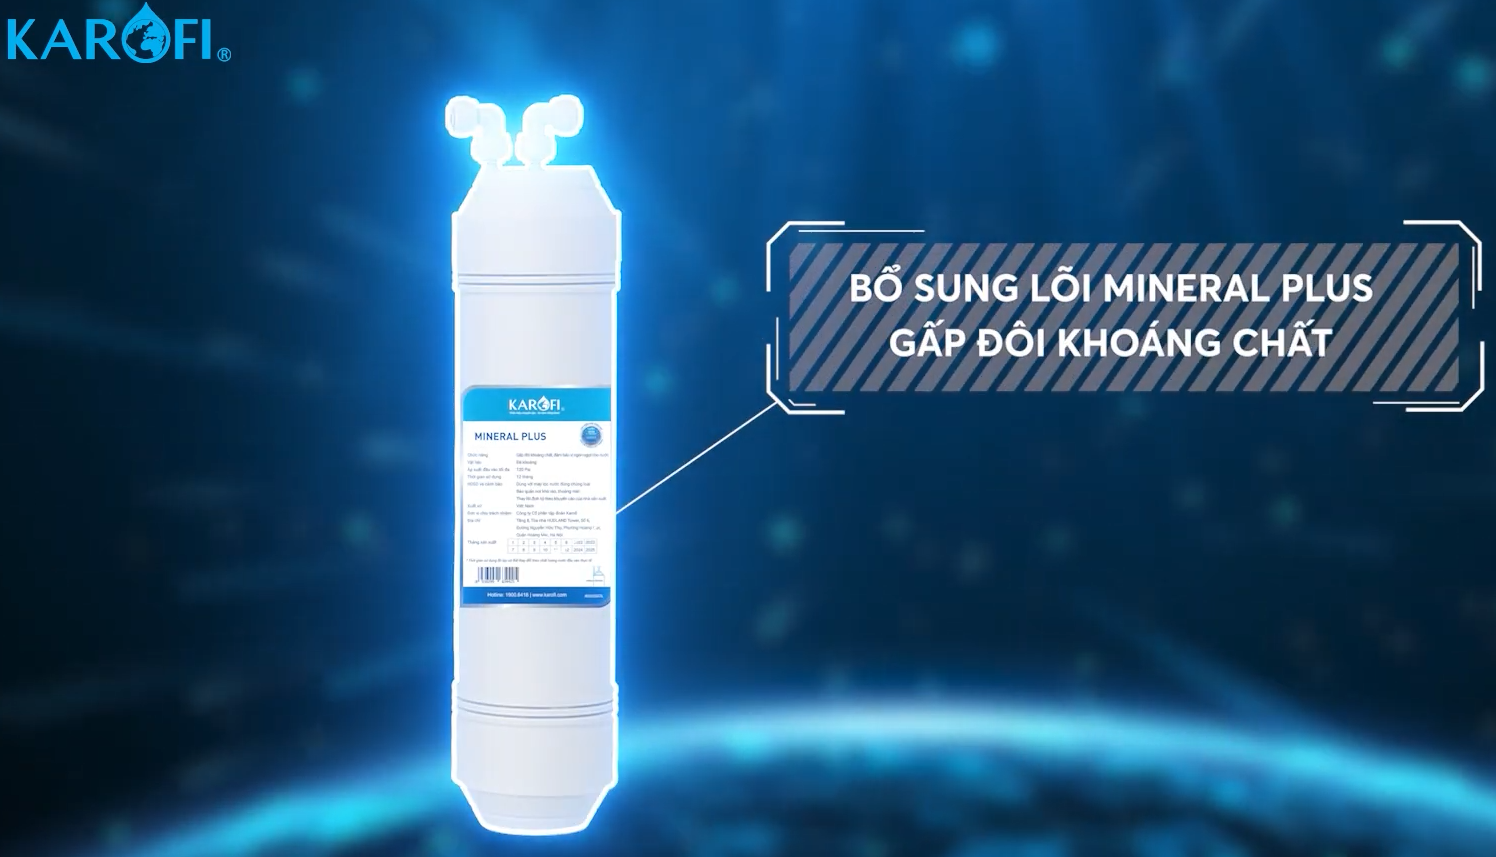 D528 được trang bị thêm 1 lõi Mineral Plus giúp bổ sung khoáng chất và tạo vị ngọt cho nước